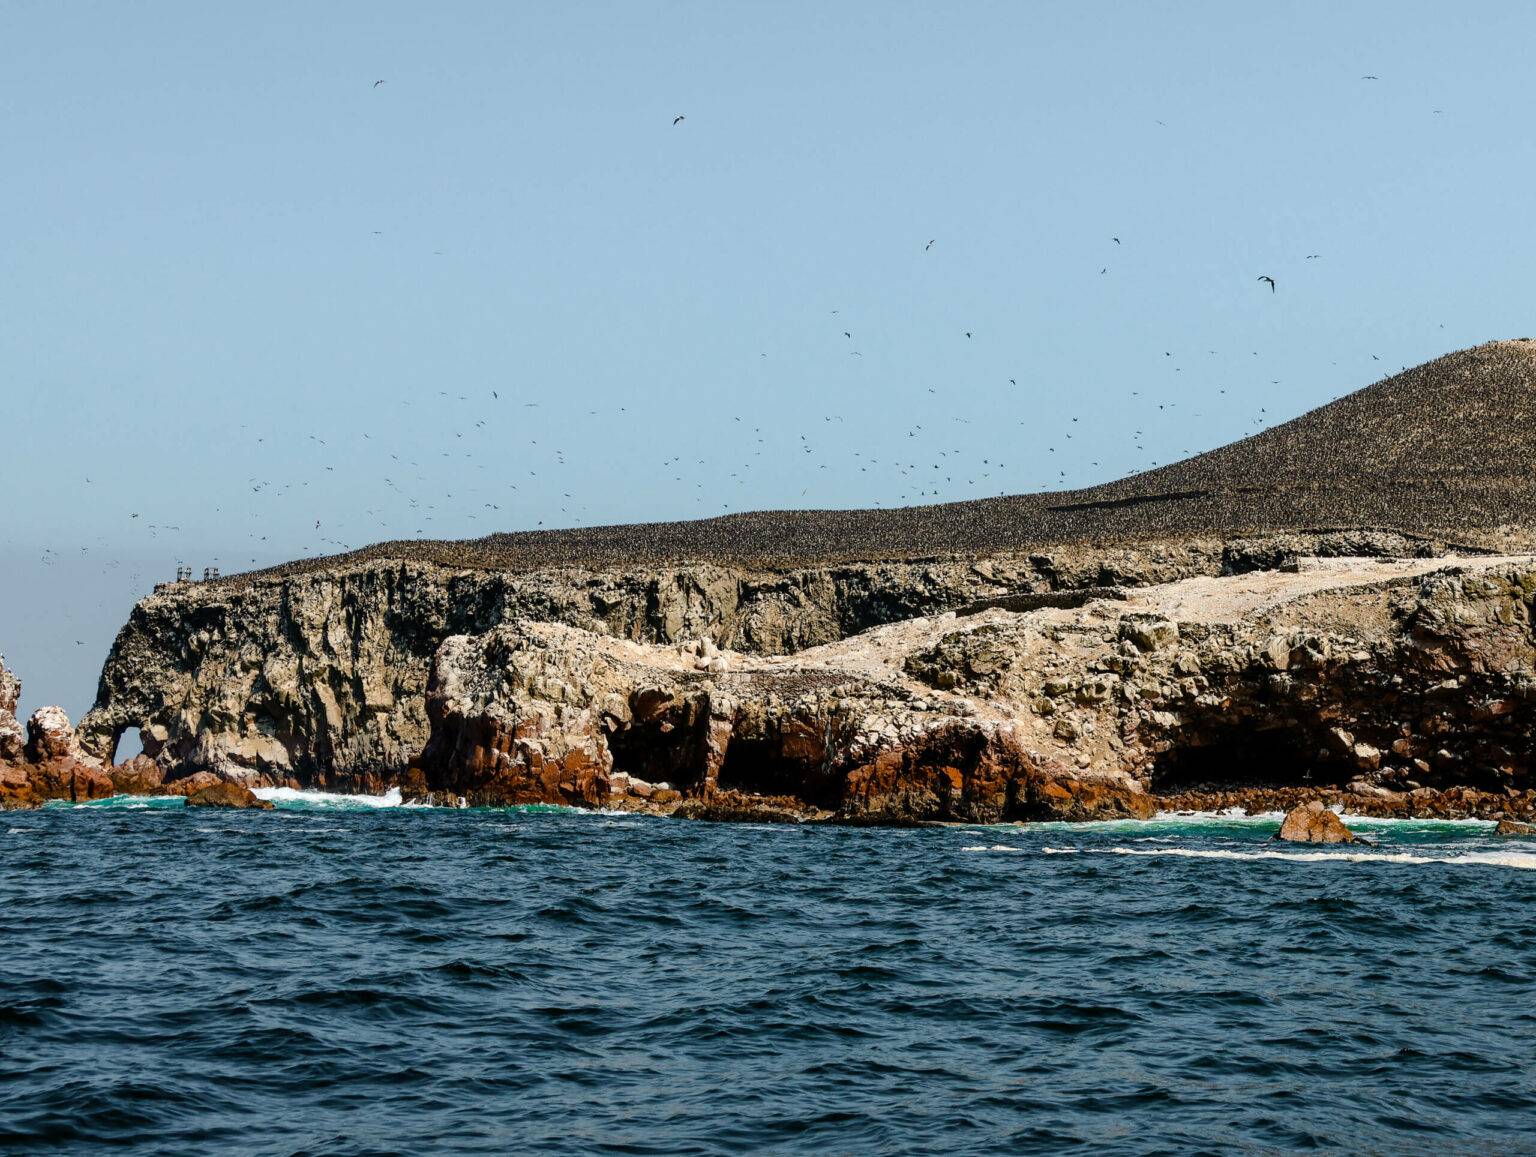 Bei einem Bootsausflug zu den Ballestas Islands kannst du zahlreiche Seevögel, Seelöwen und Humboldt-Pinguine sehen.